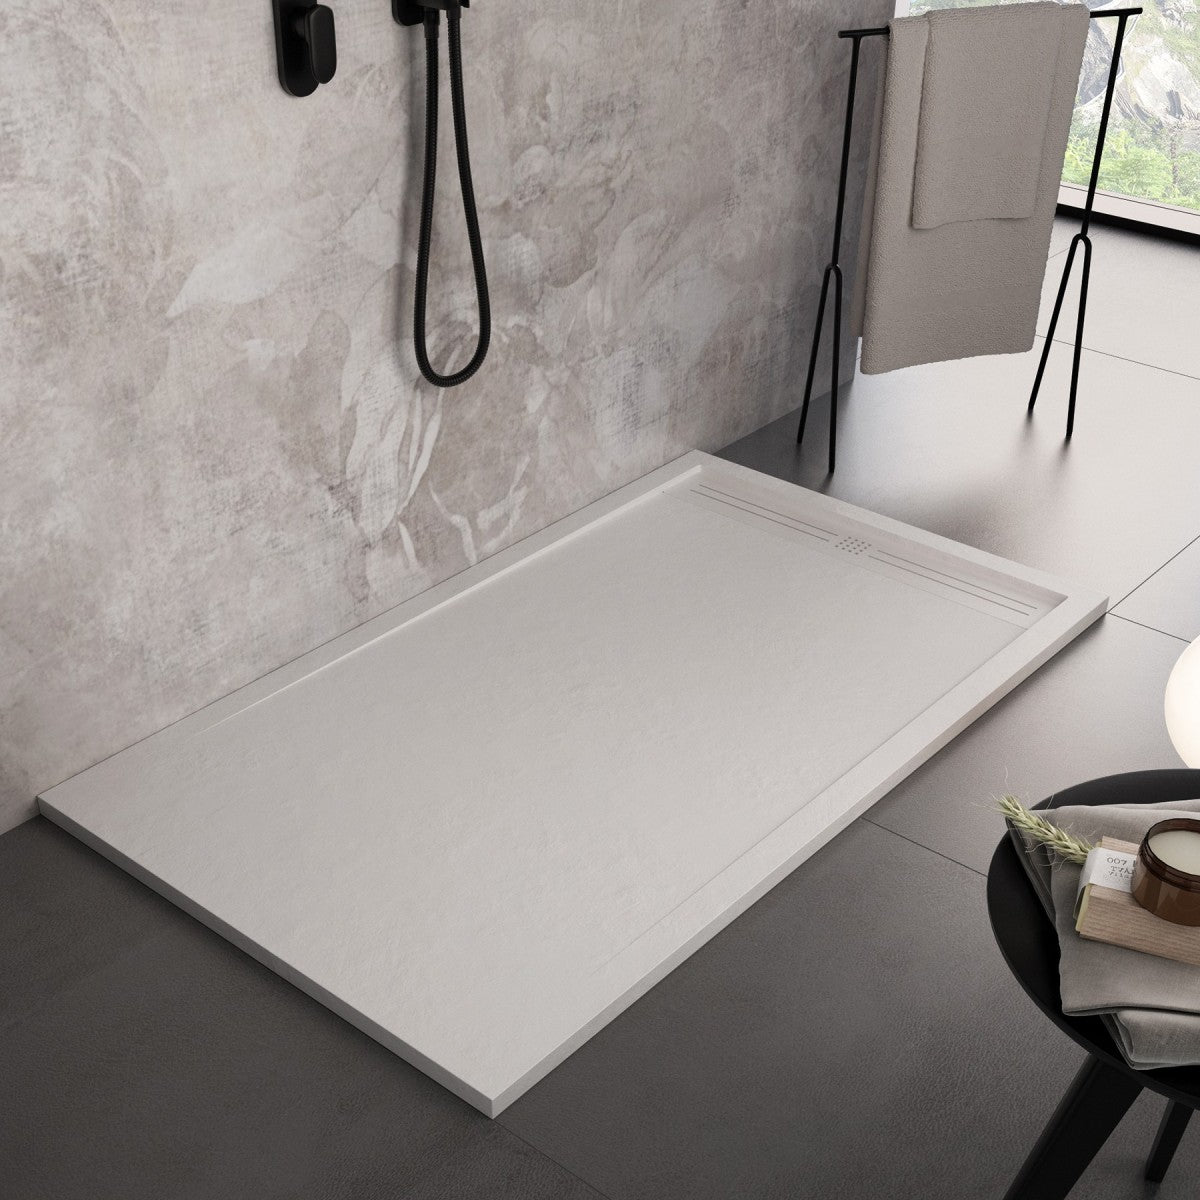 Piatto doccia in marmo resina bianco pietra cemento grid, misura 70x150